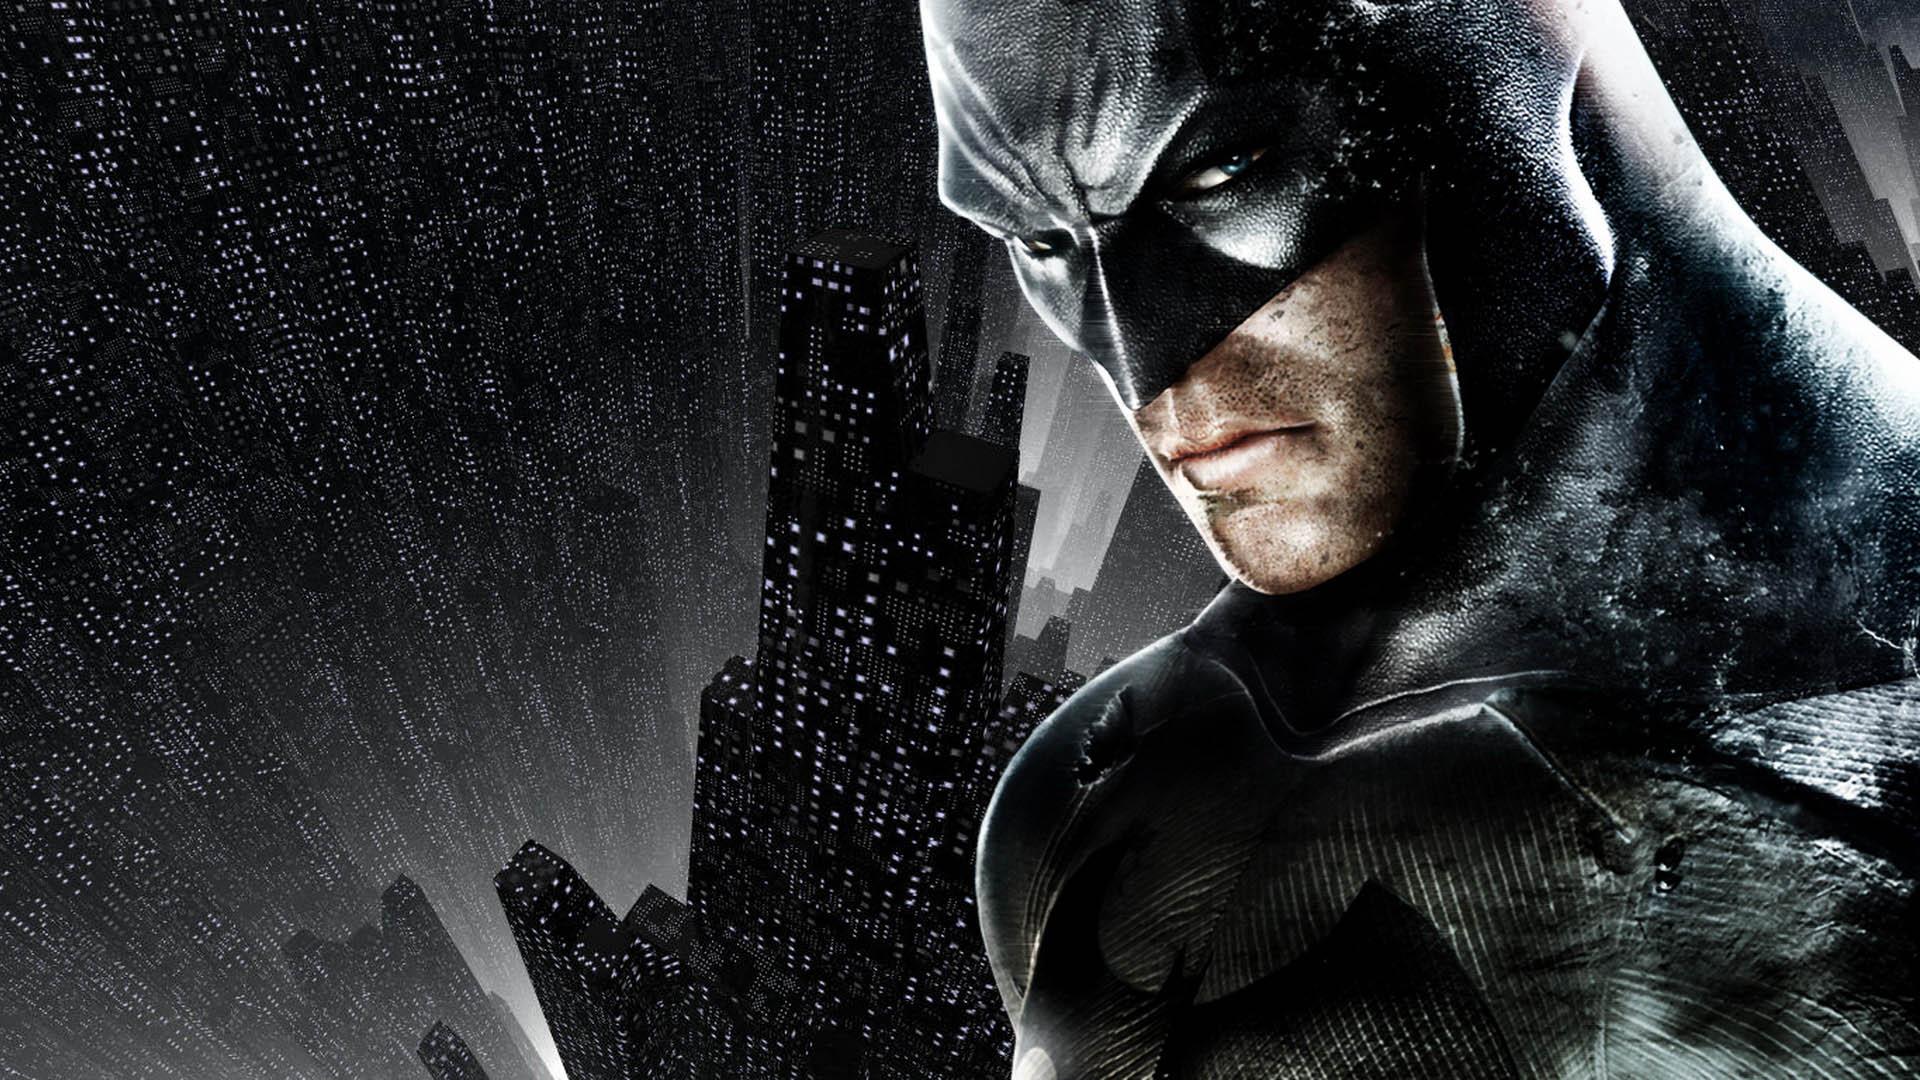 Batman HD Wallpaper 1080p Image